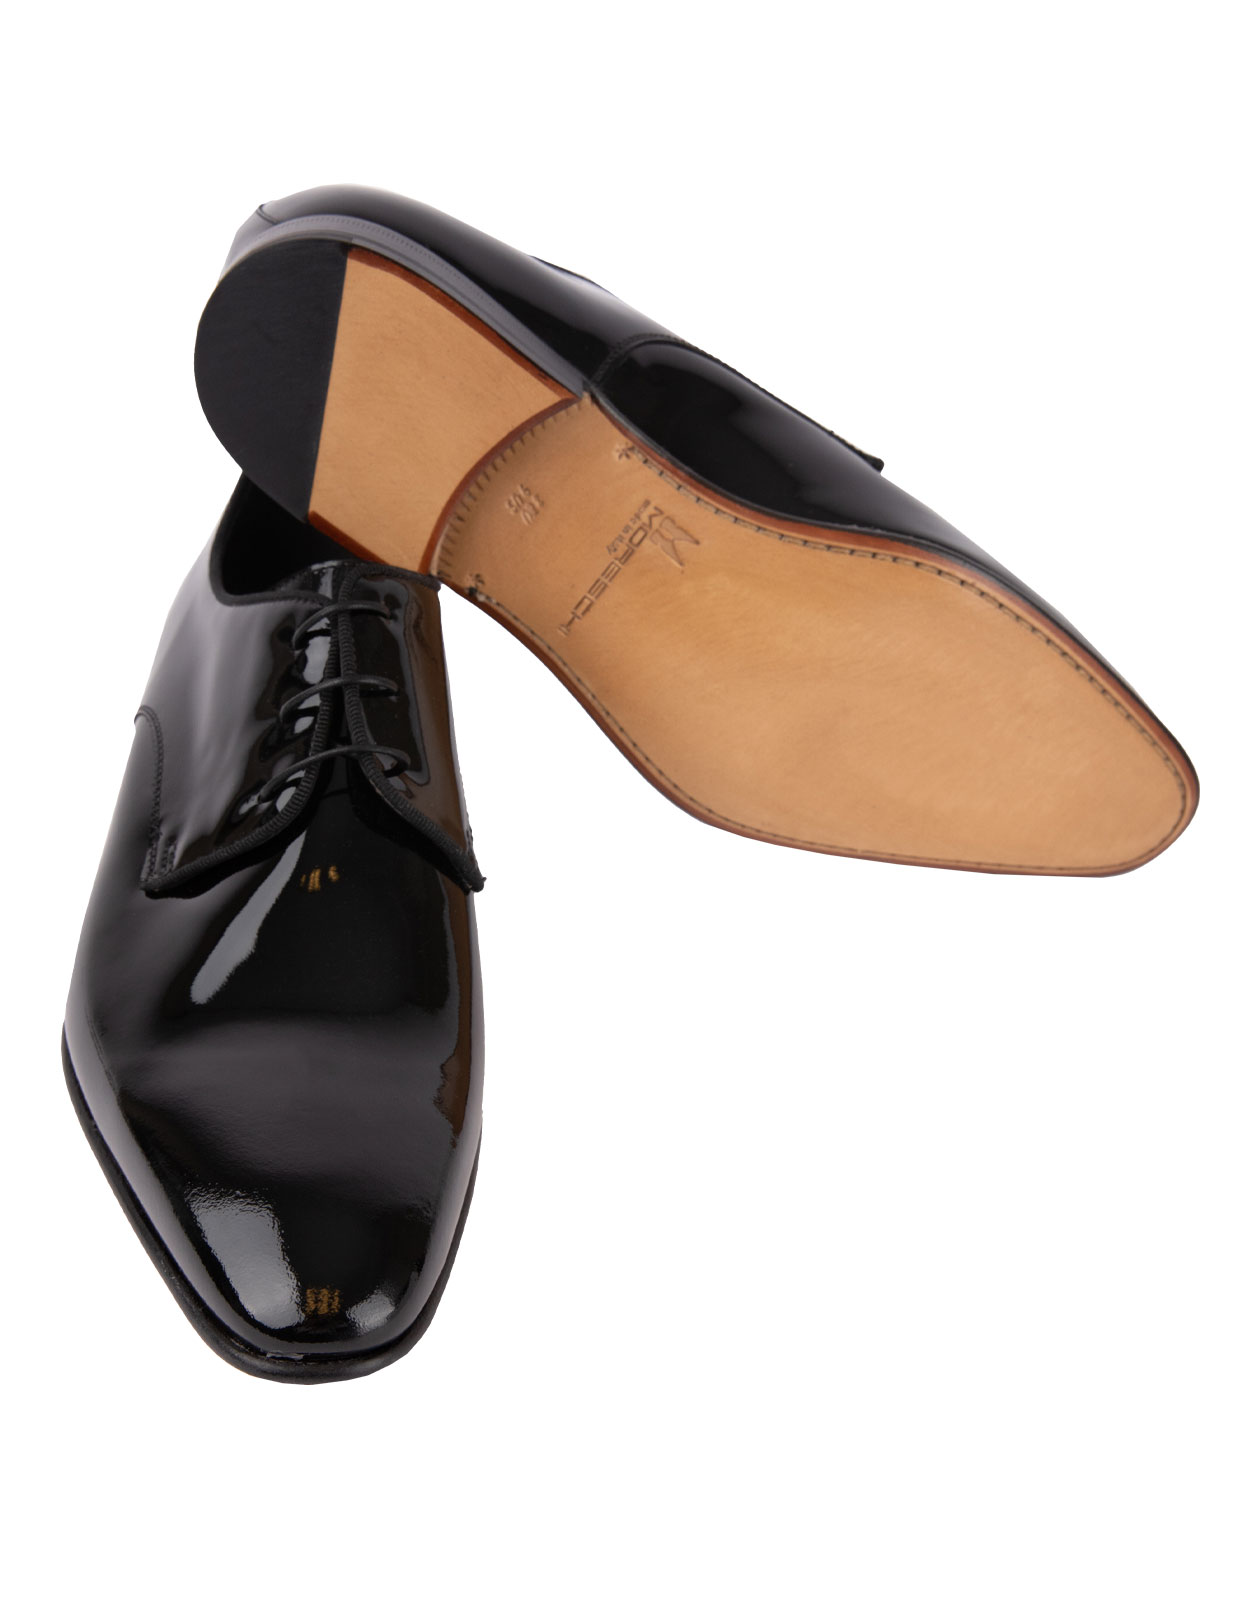 Linz Patent Leather Derby Shoes Black Stl 9